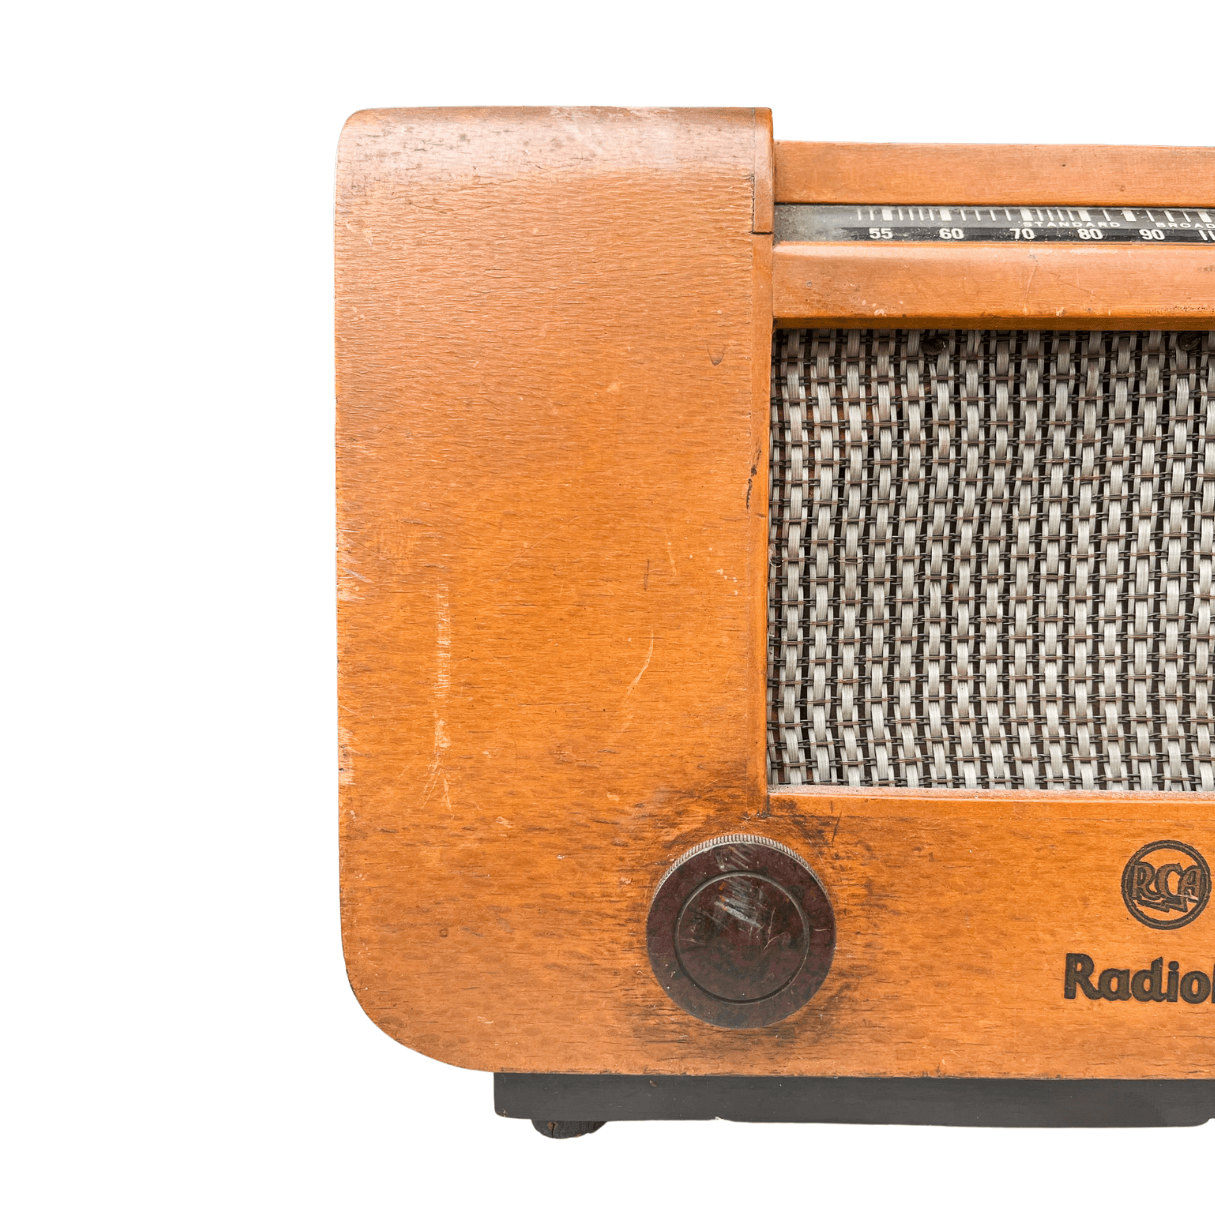 Rádio Vintage Valvulado RCA Radiola anos 1940